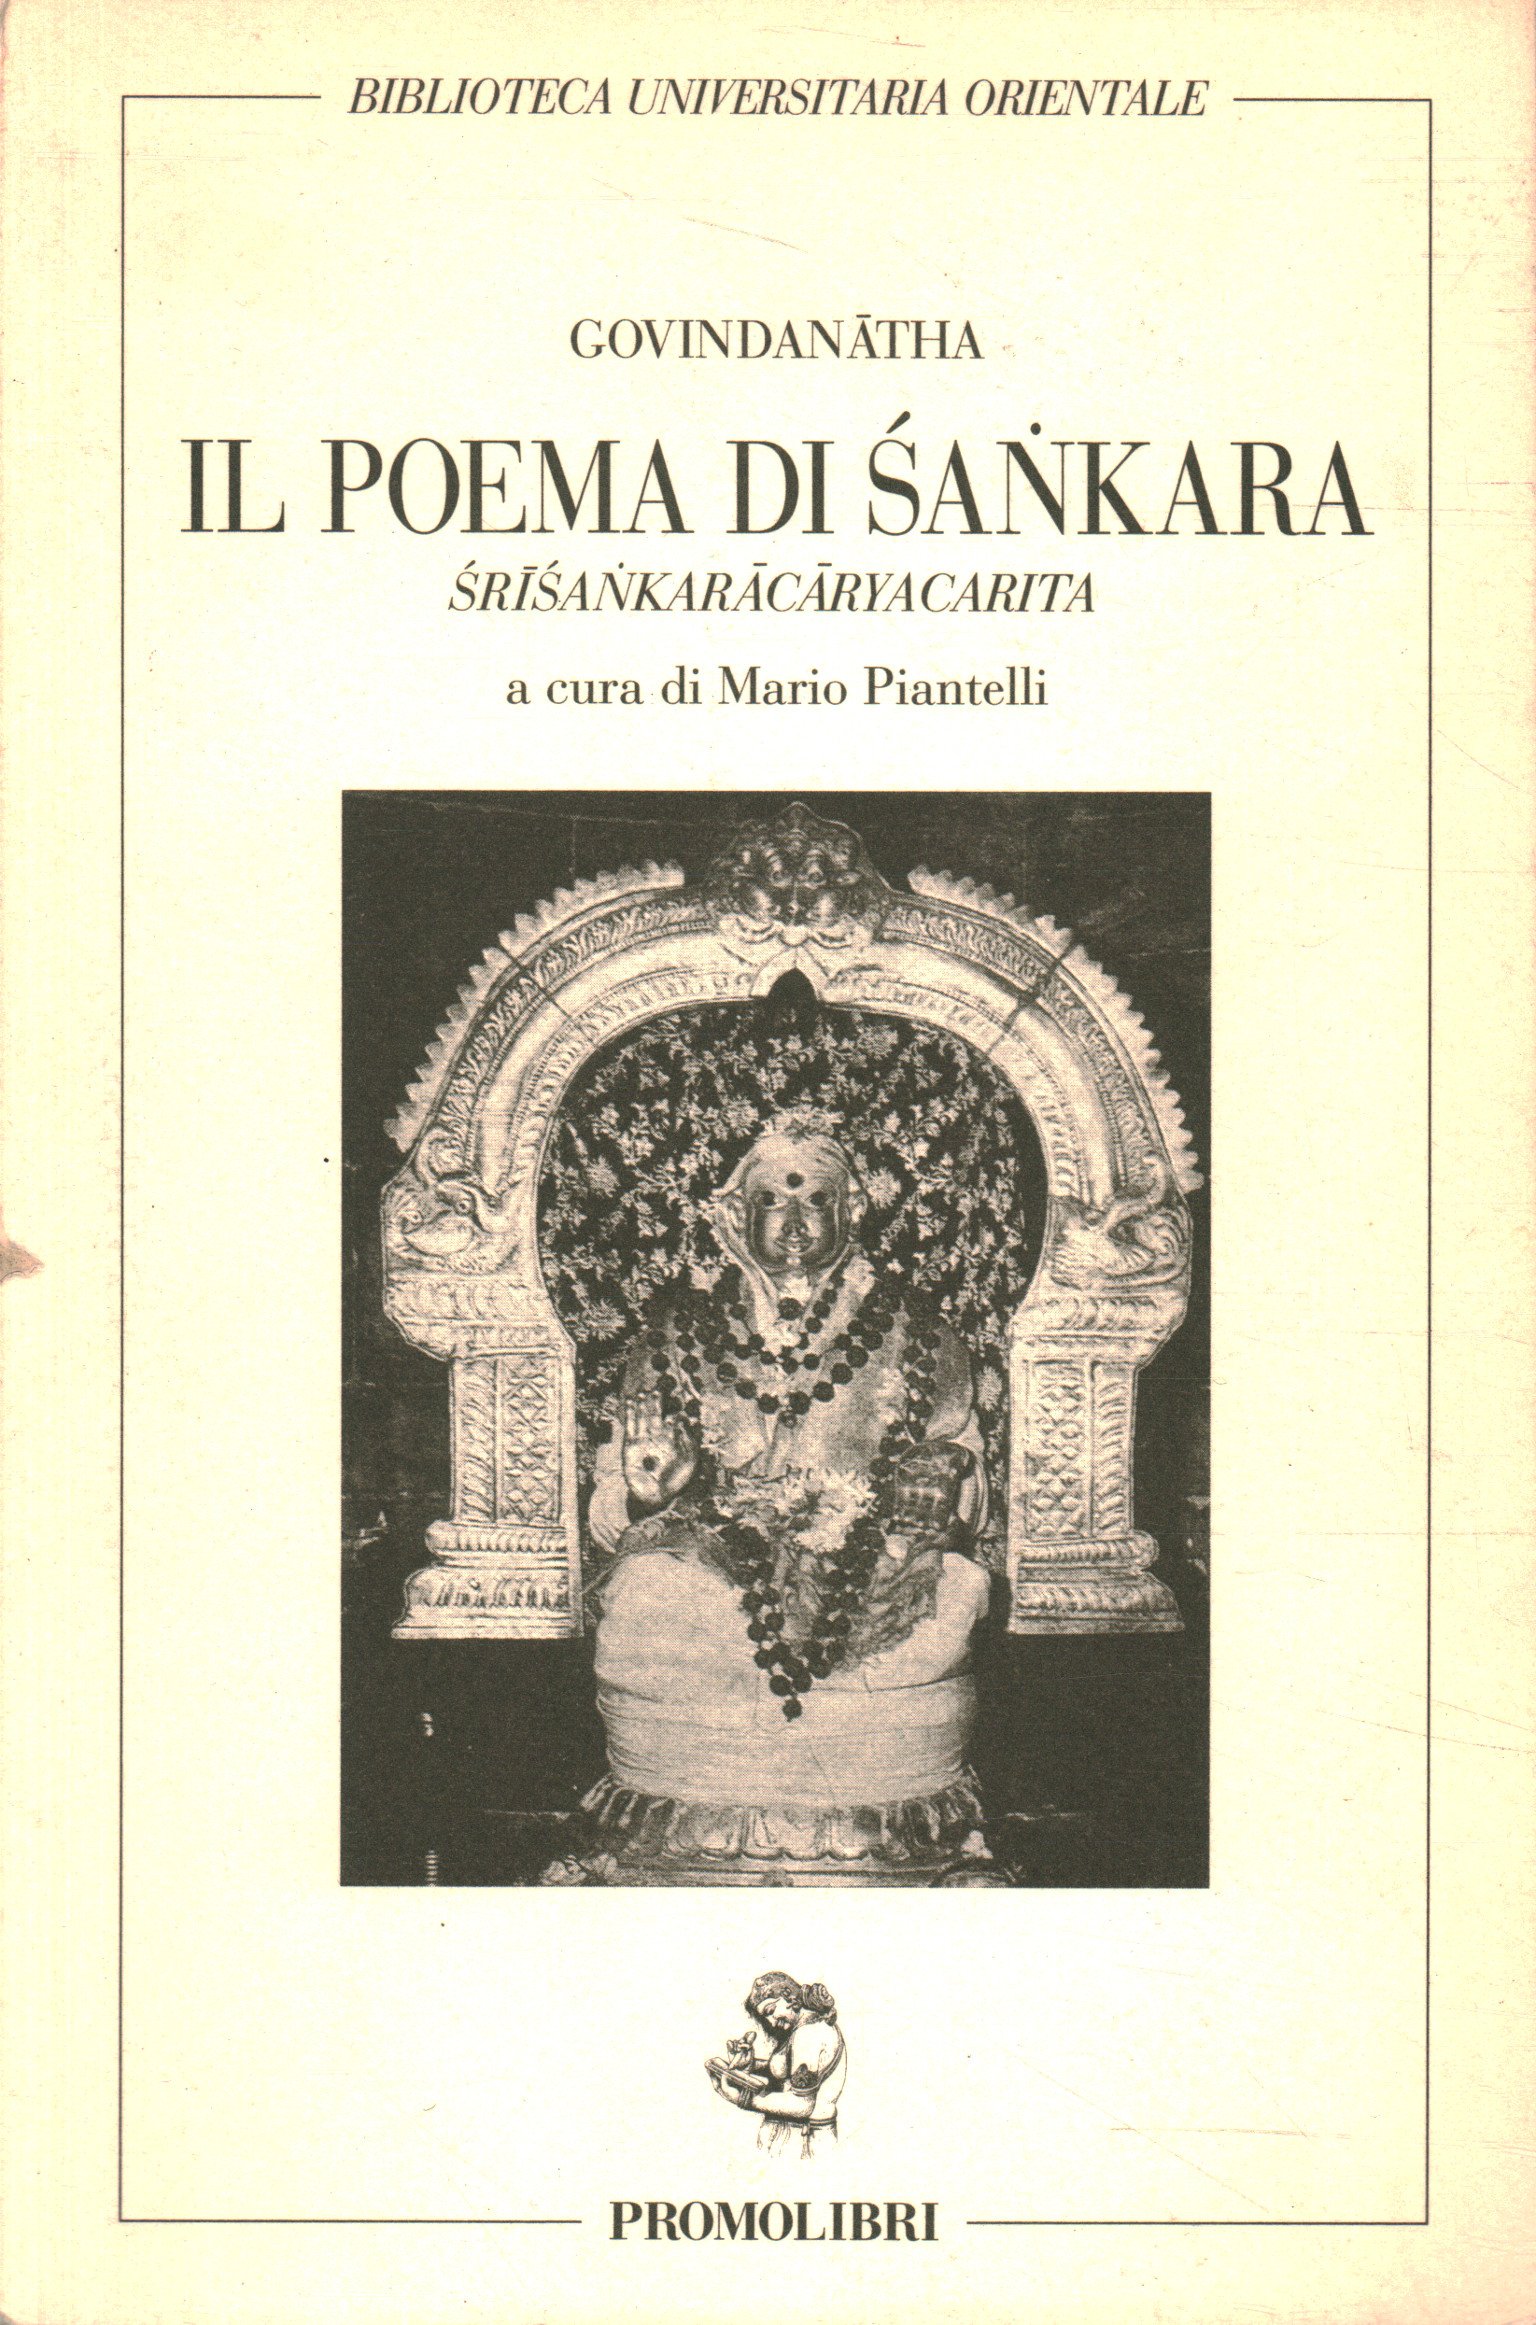 Sankara's poem